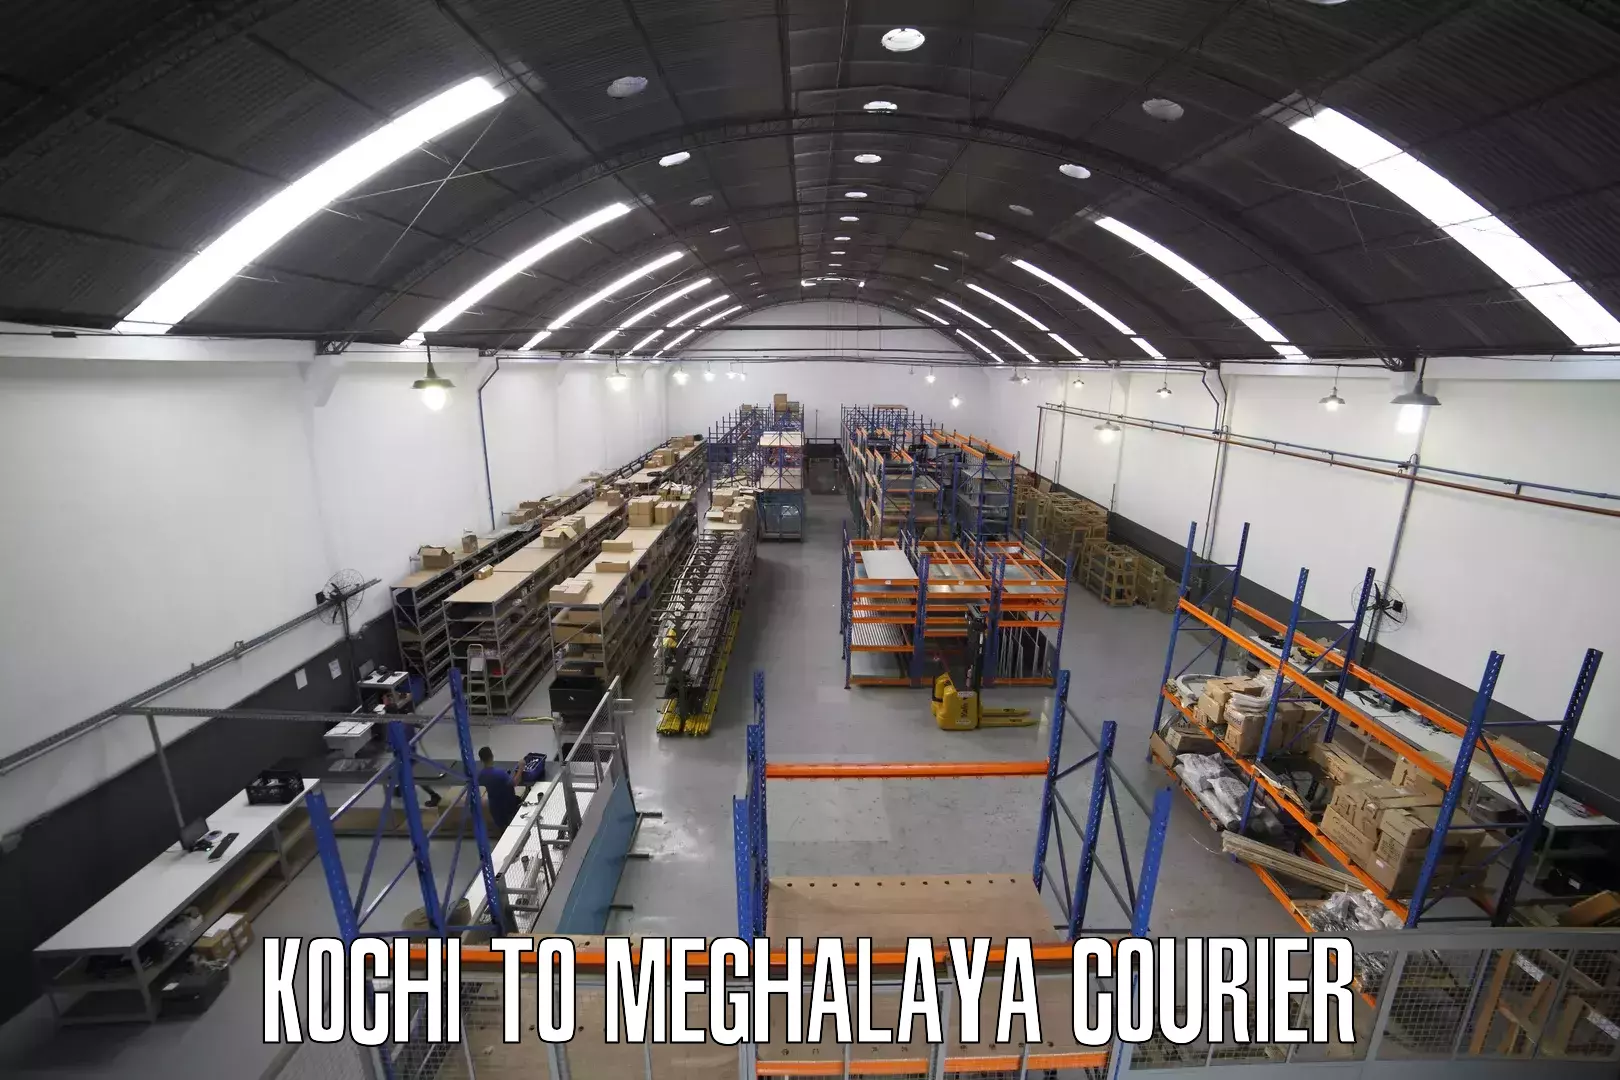 Door-to-door freight service in Kochi to Meghalaya